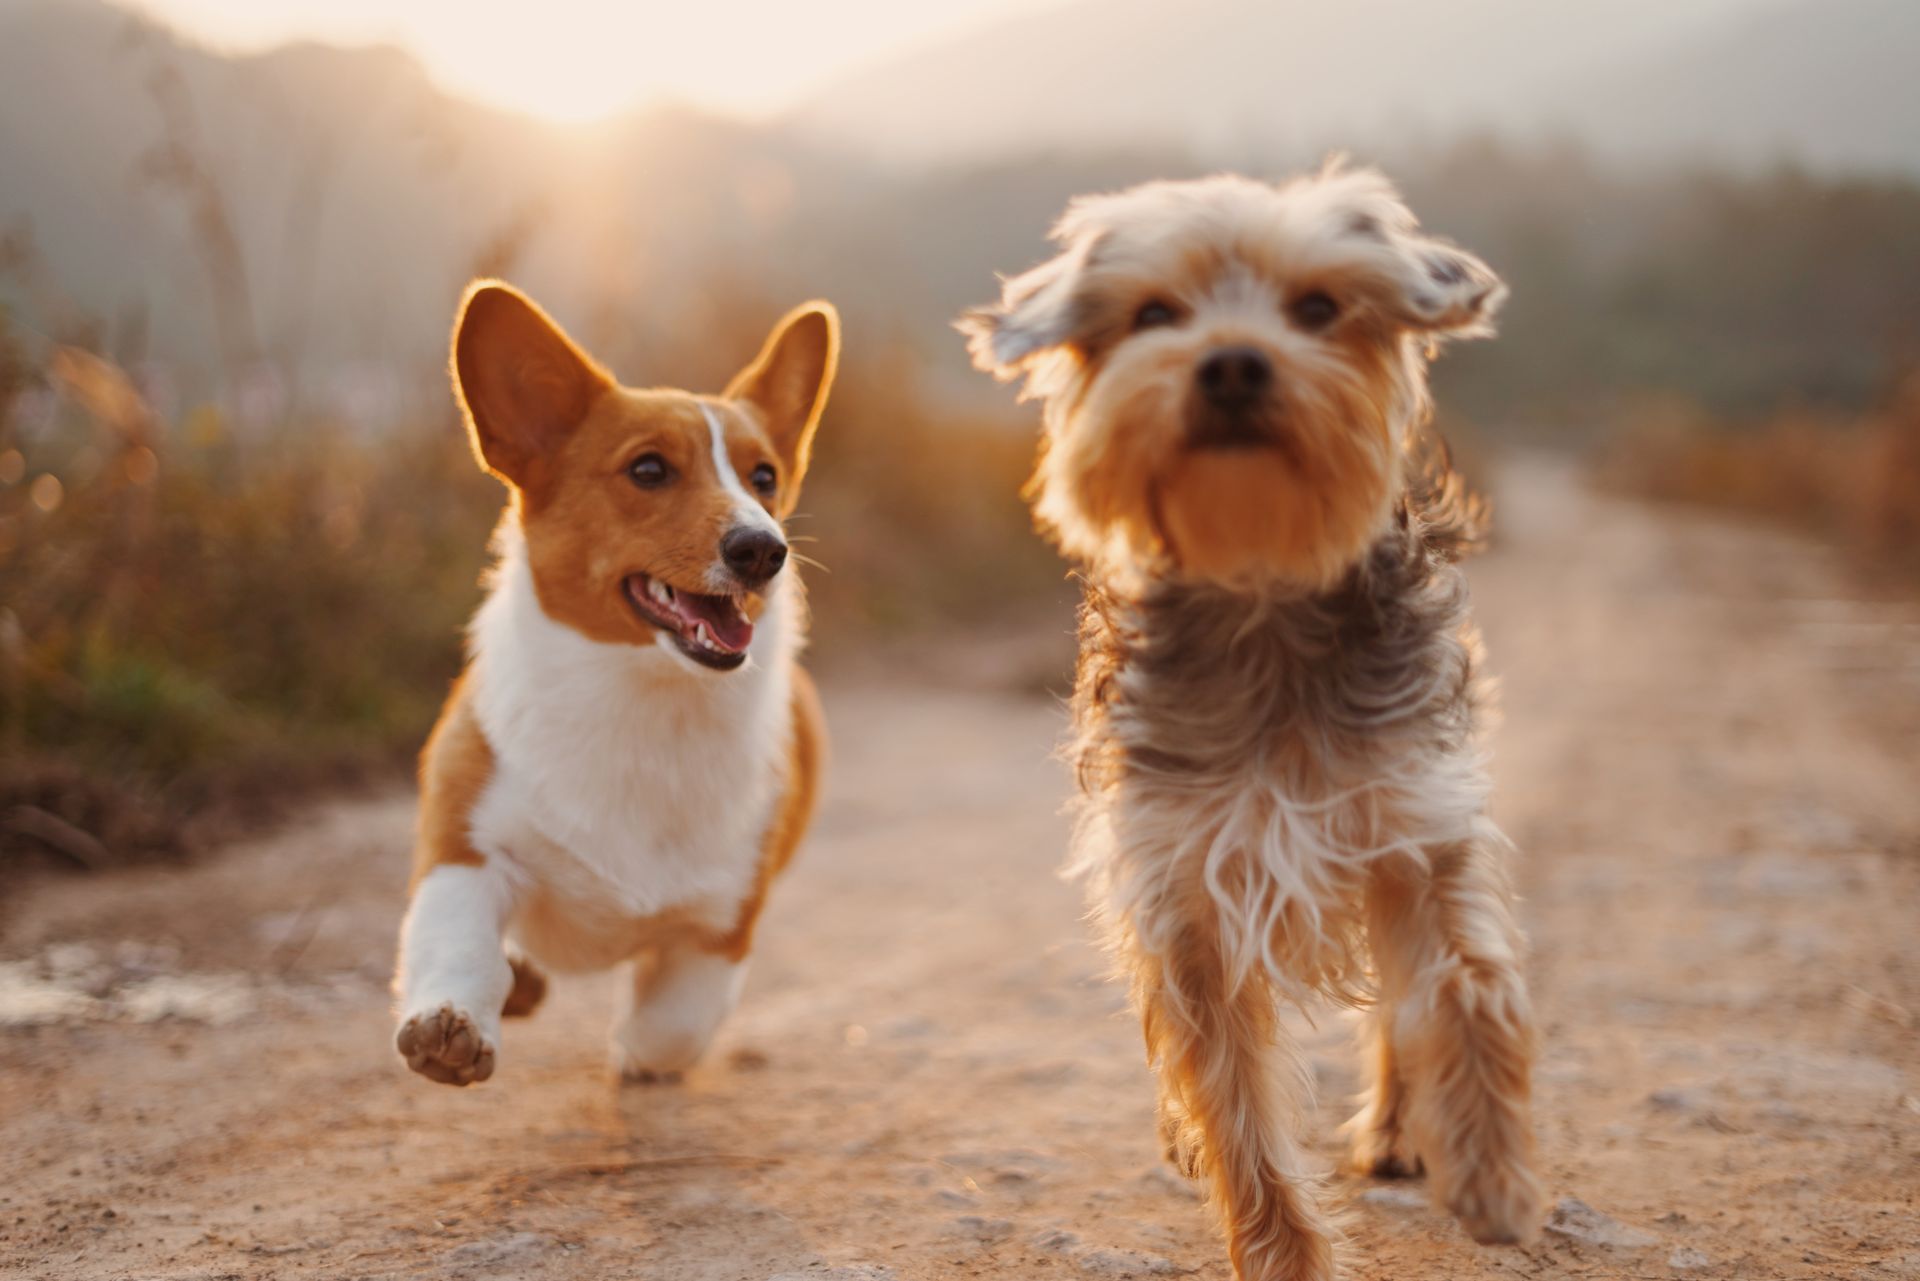 Bild zu Pubertät, zeigt zwei laufende Hunde